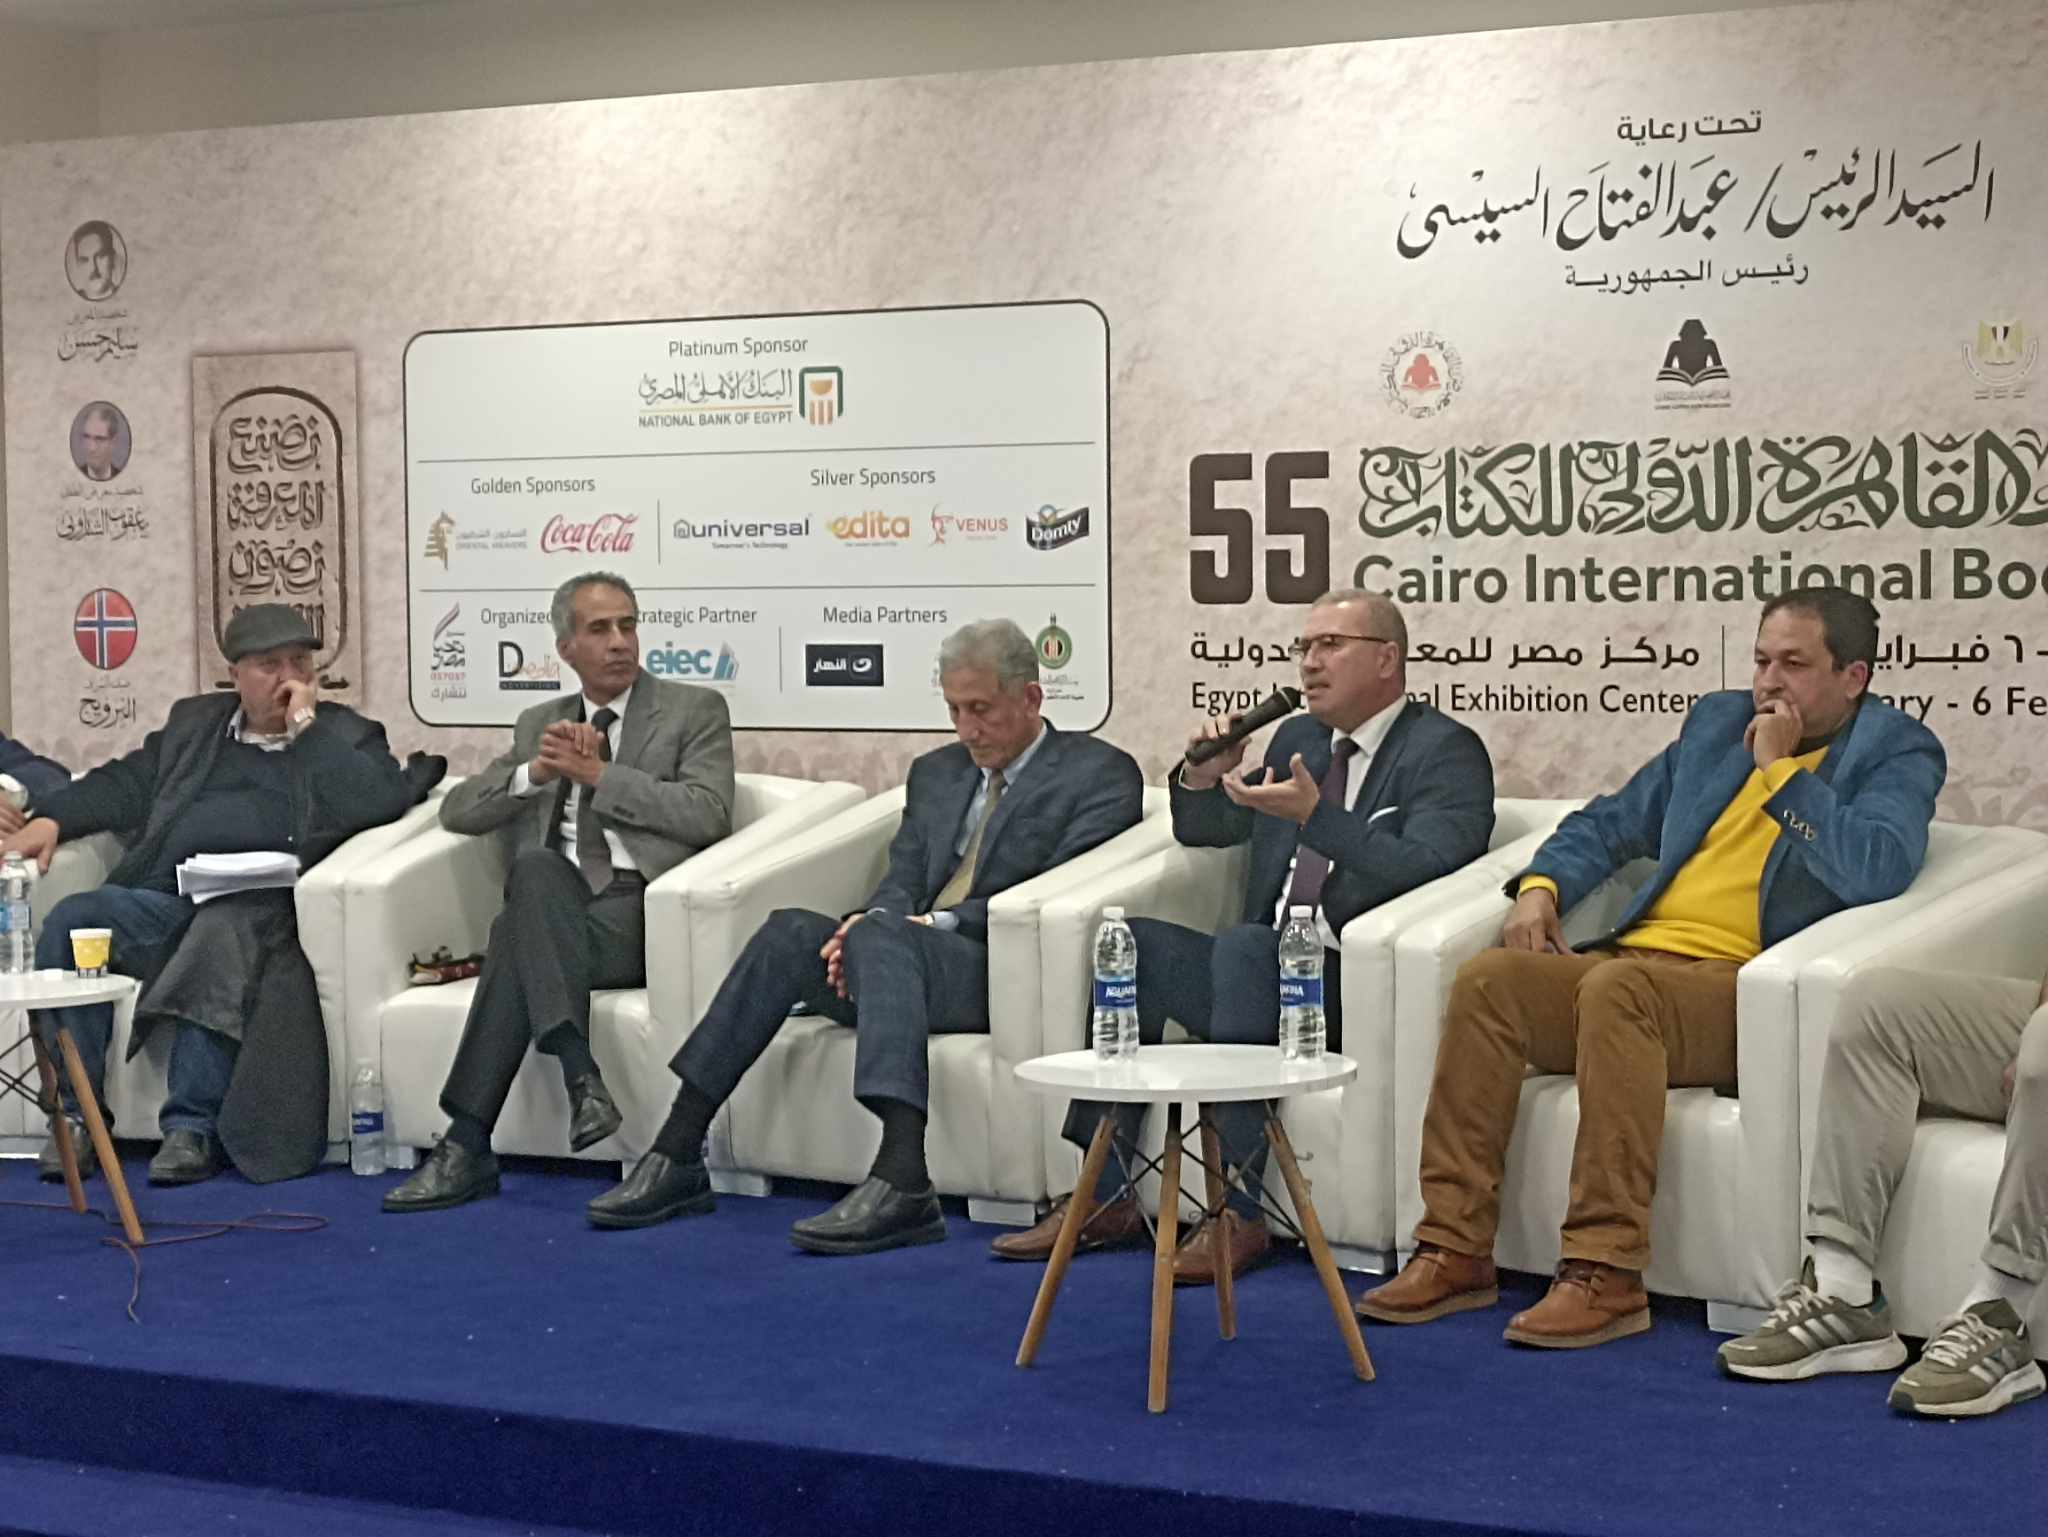  الصالون الثقافي يناقش   آفاق الرواية العربية  في فعاليات معرض الكتاب